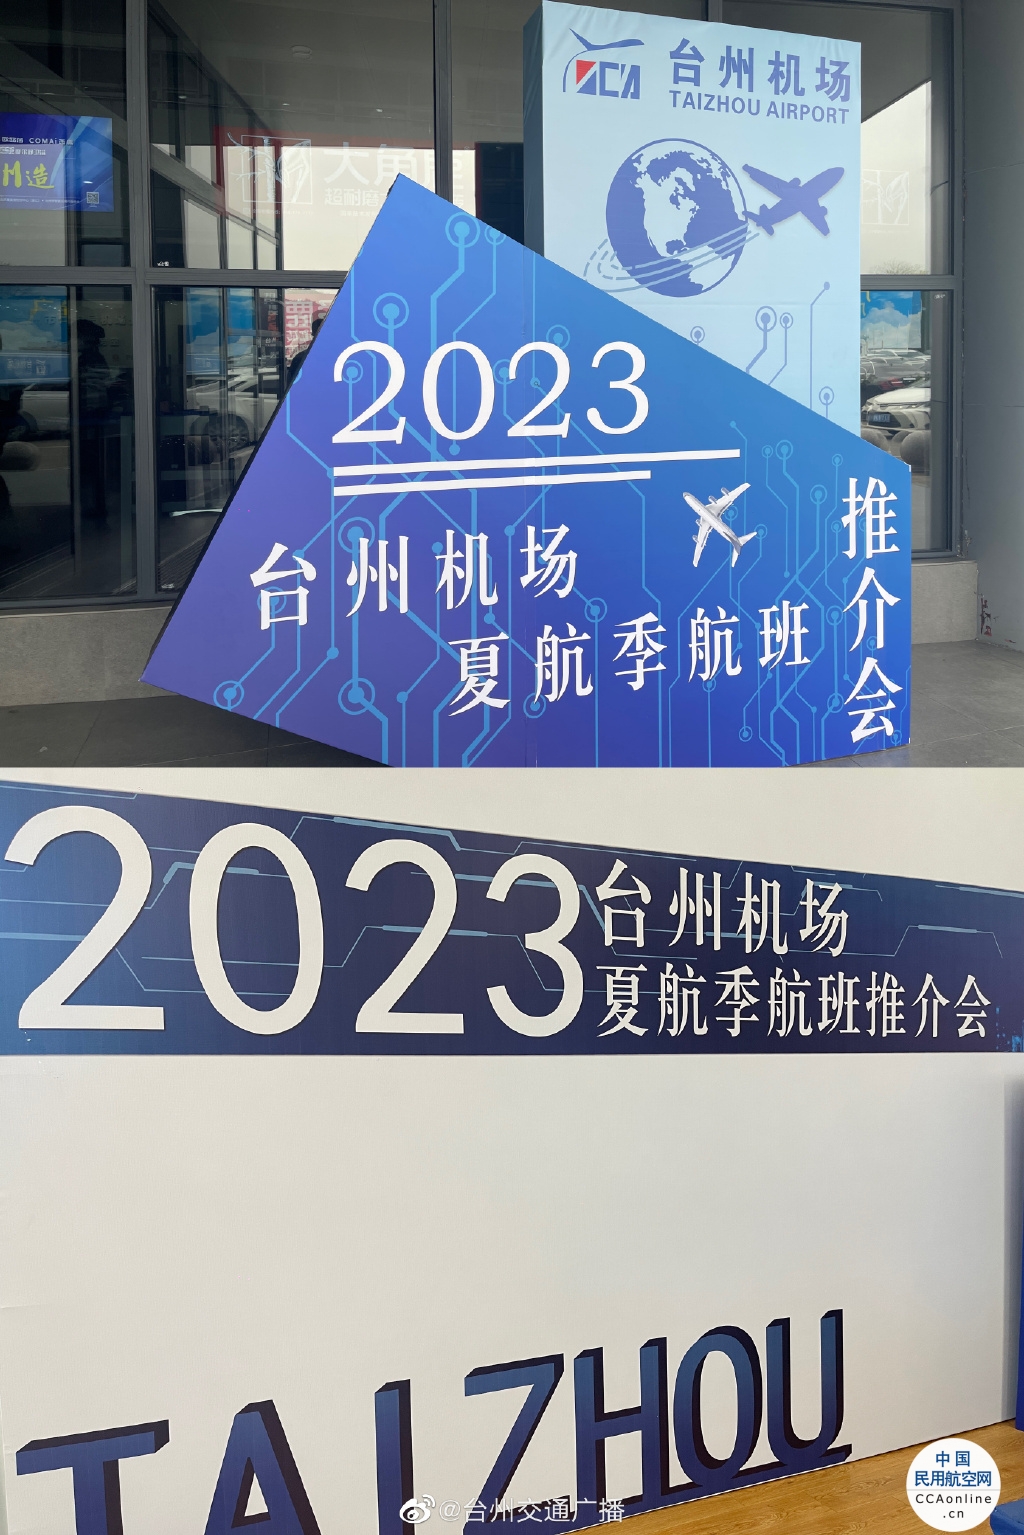 台州机场2023年夏航季本周开始